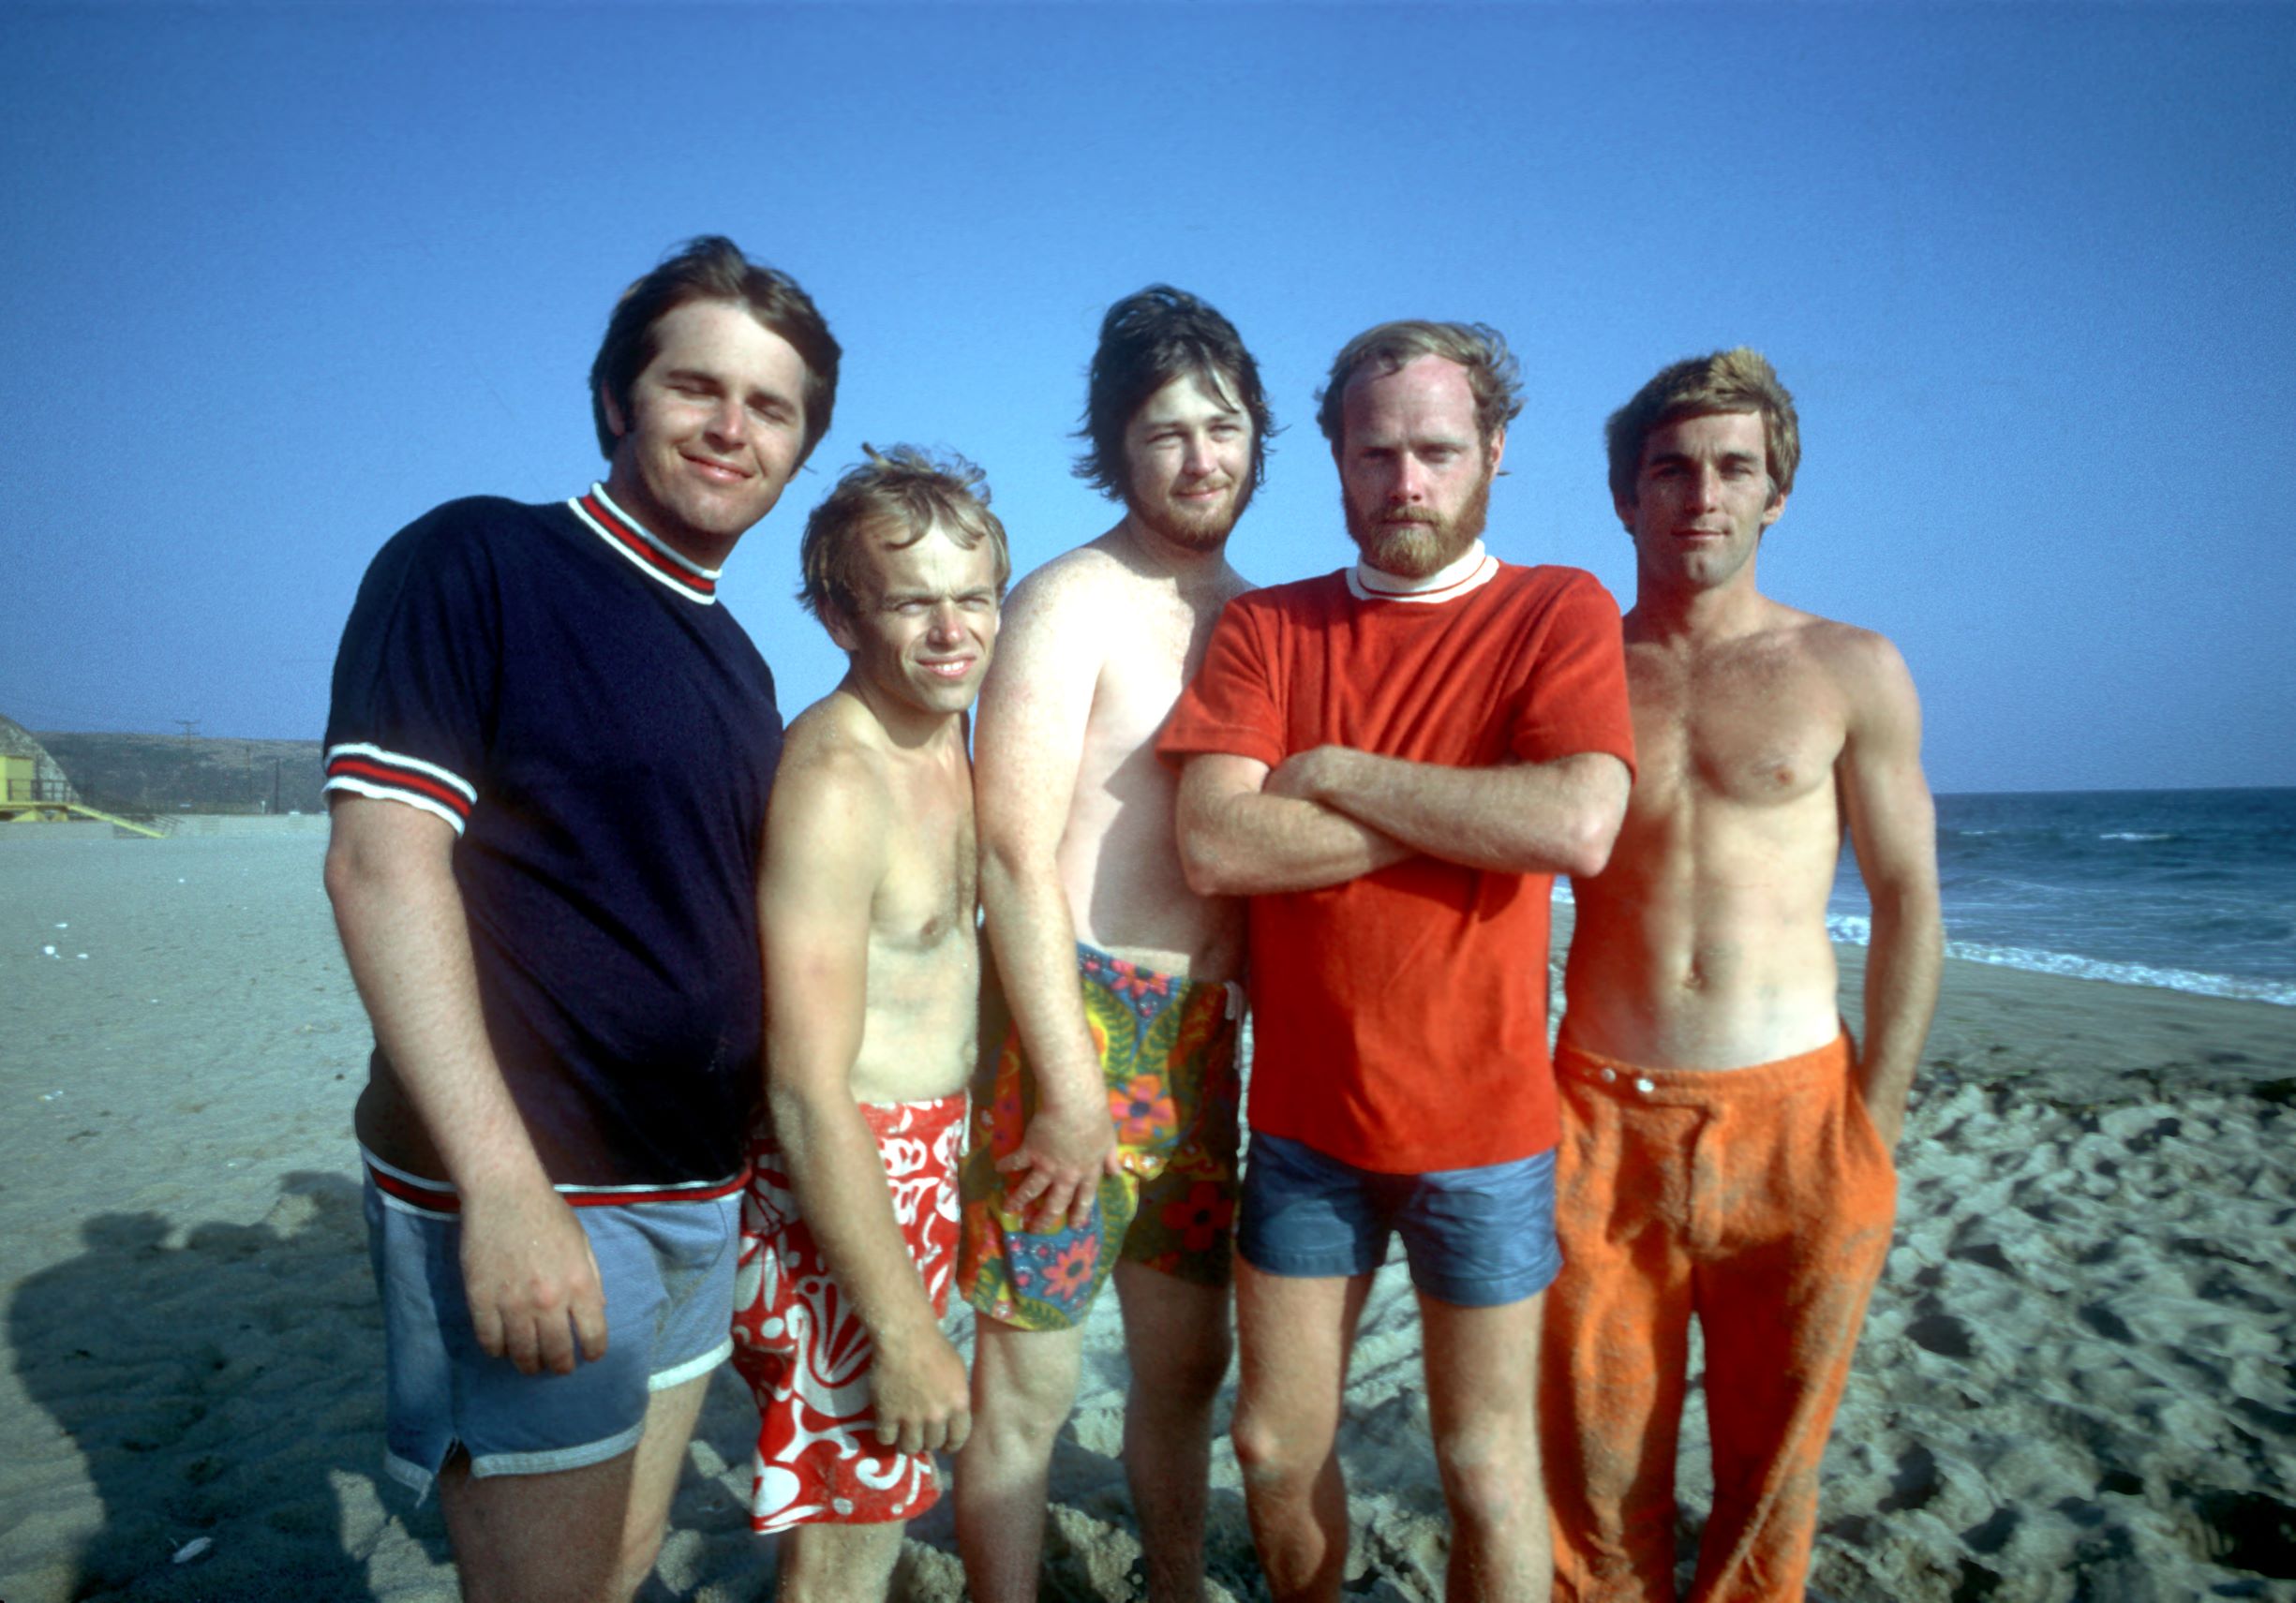 The Beach Boys near the water